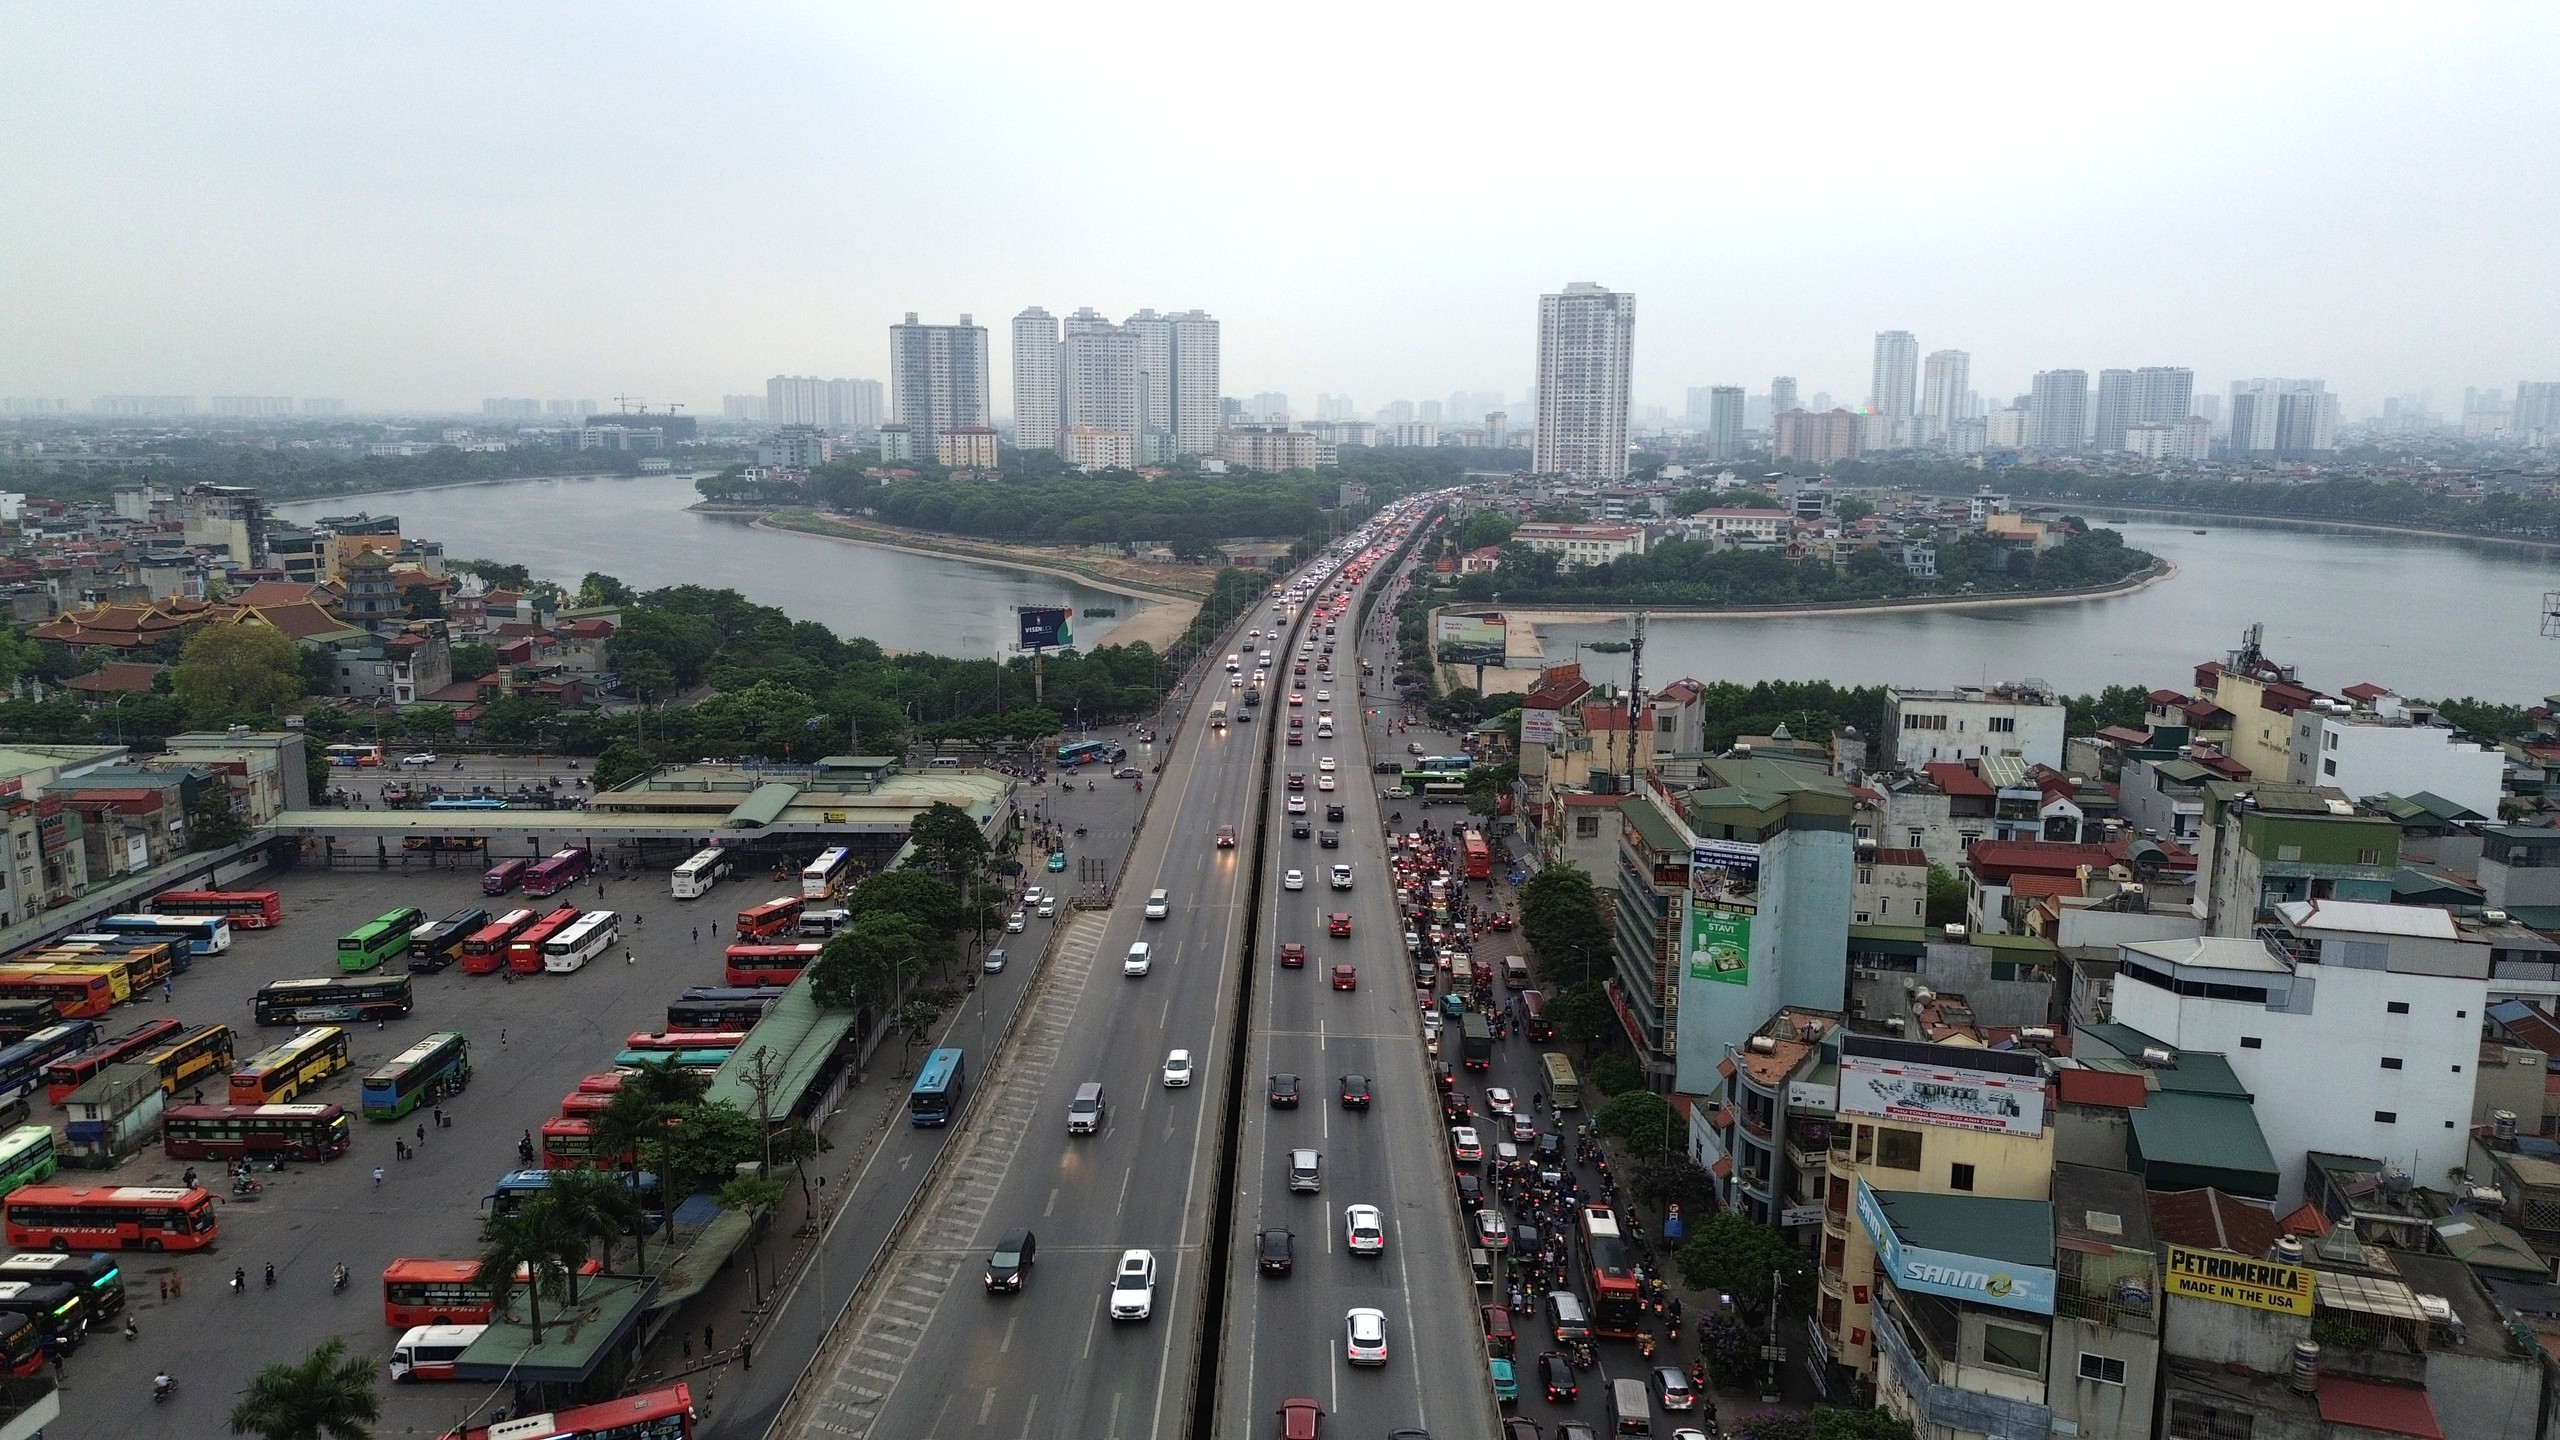 Bất ngờ tình hình giao thông tại Hà Nội vào ngày cuối nghỉ lễ 30/4 - 1/5- Ảnh 3.